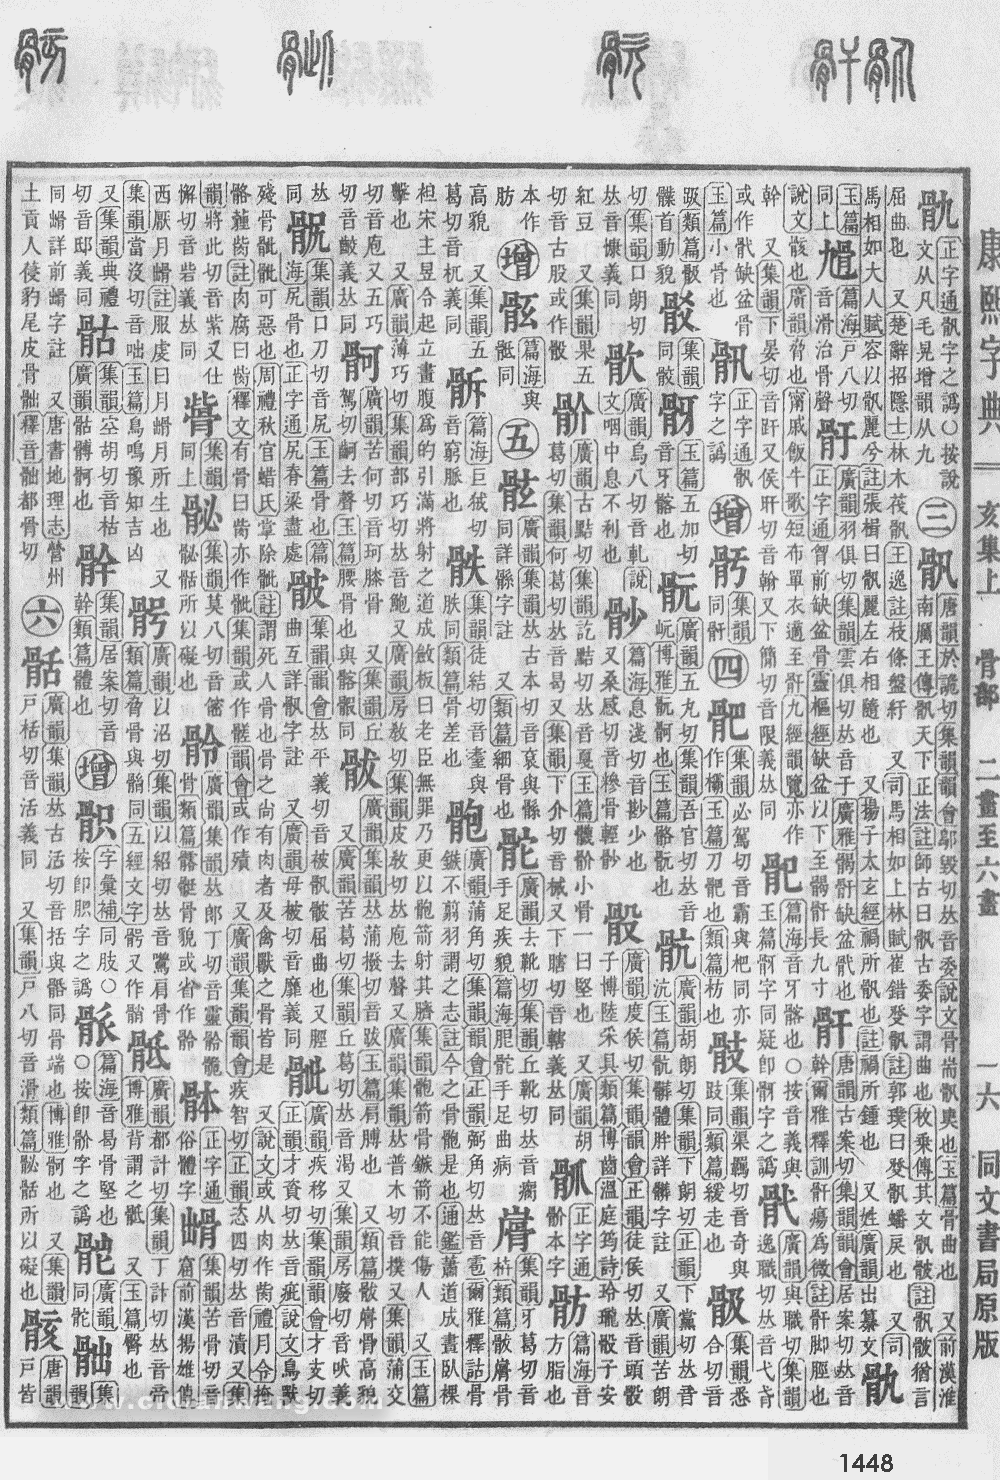 康熙字典掃描版第1448頁